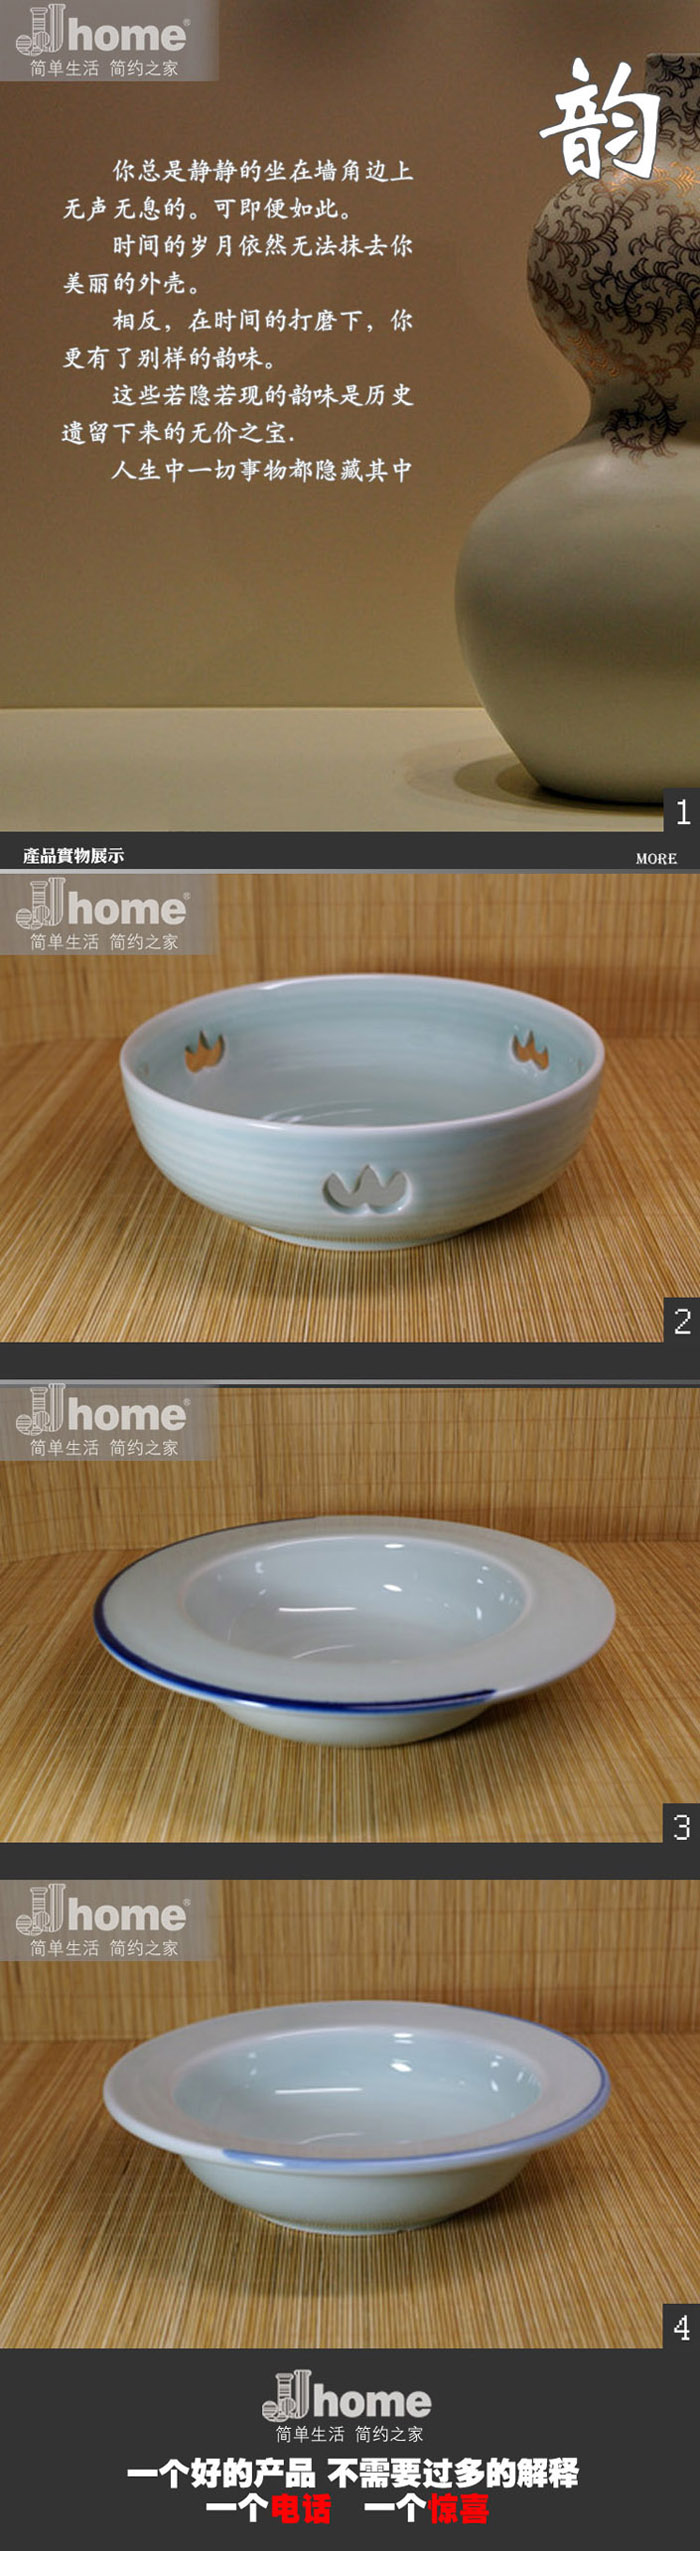 青釉陶瓷   餐具   碗盘   JJHOME酒店用品1号店